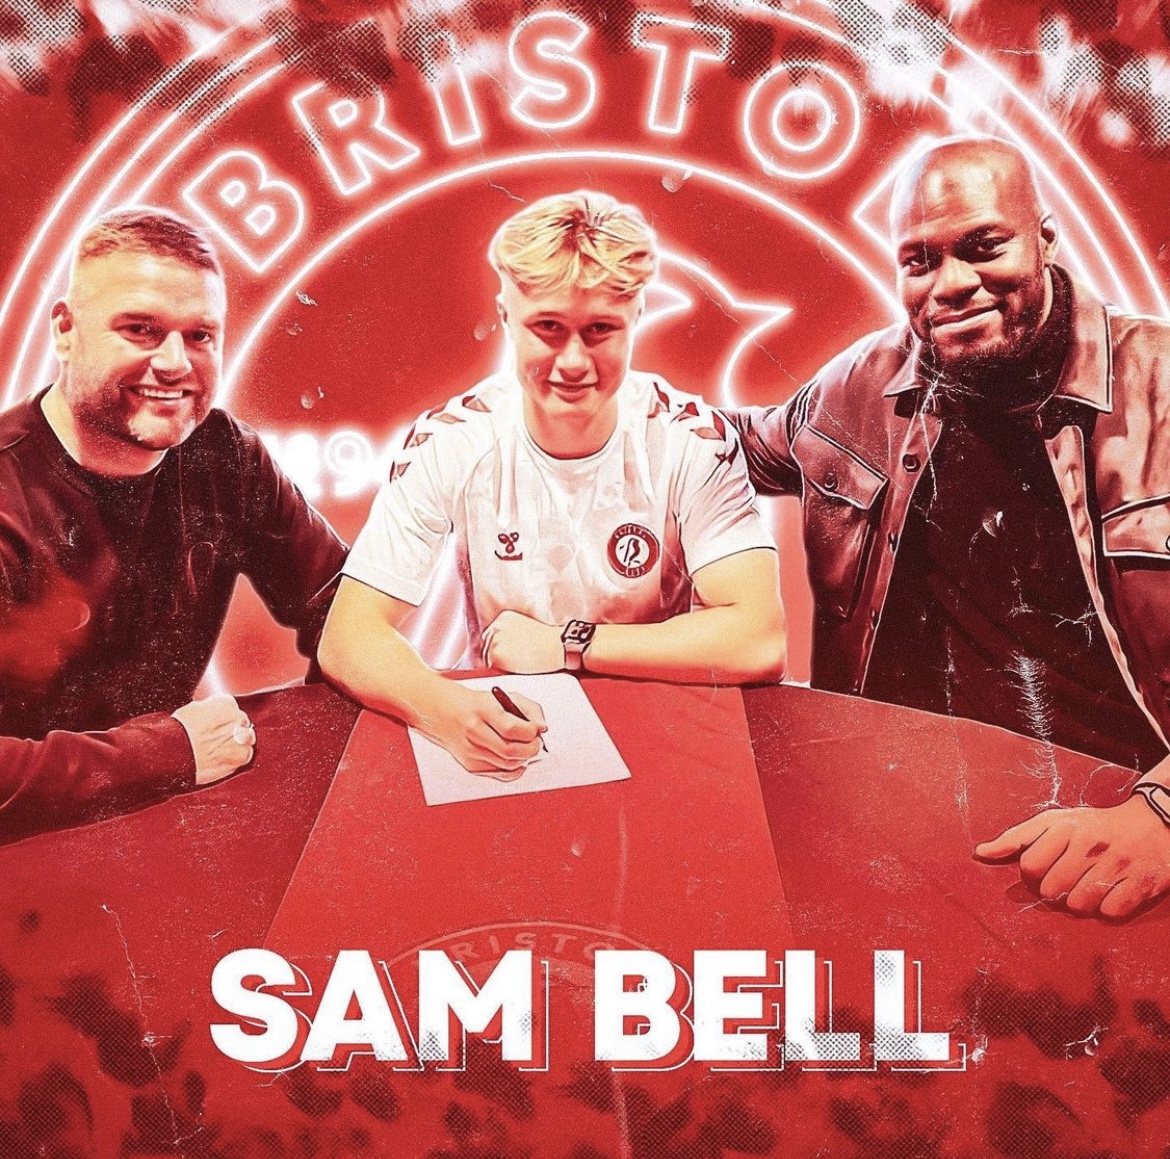 Sam Bell new SMI recruit